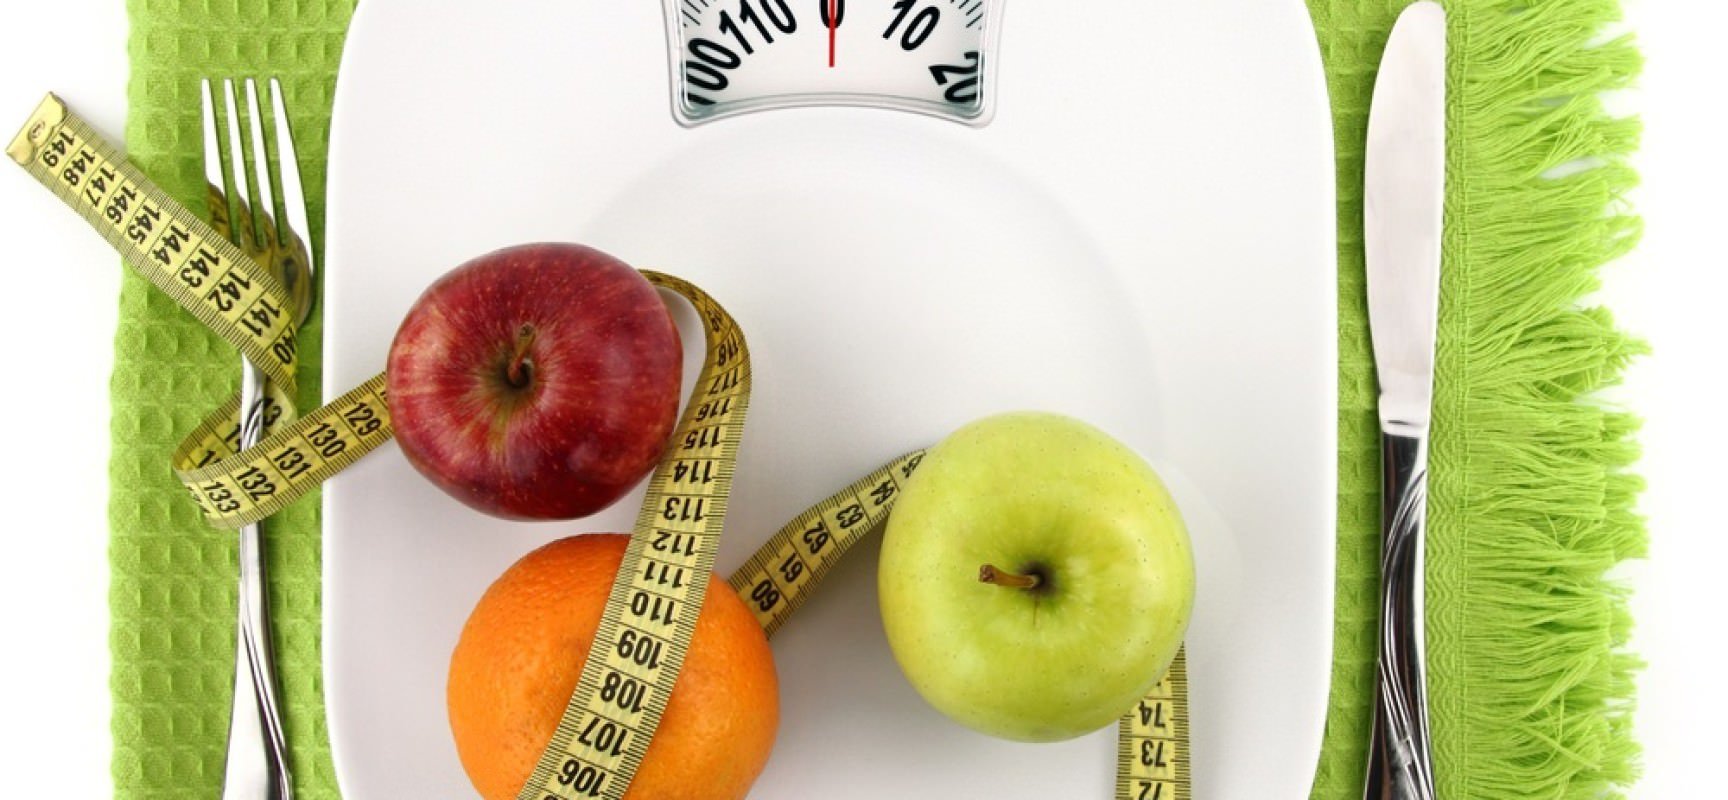 Про худении: як почати схуднення, покрокова система, поради дієтологів